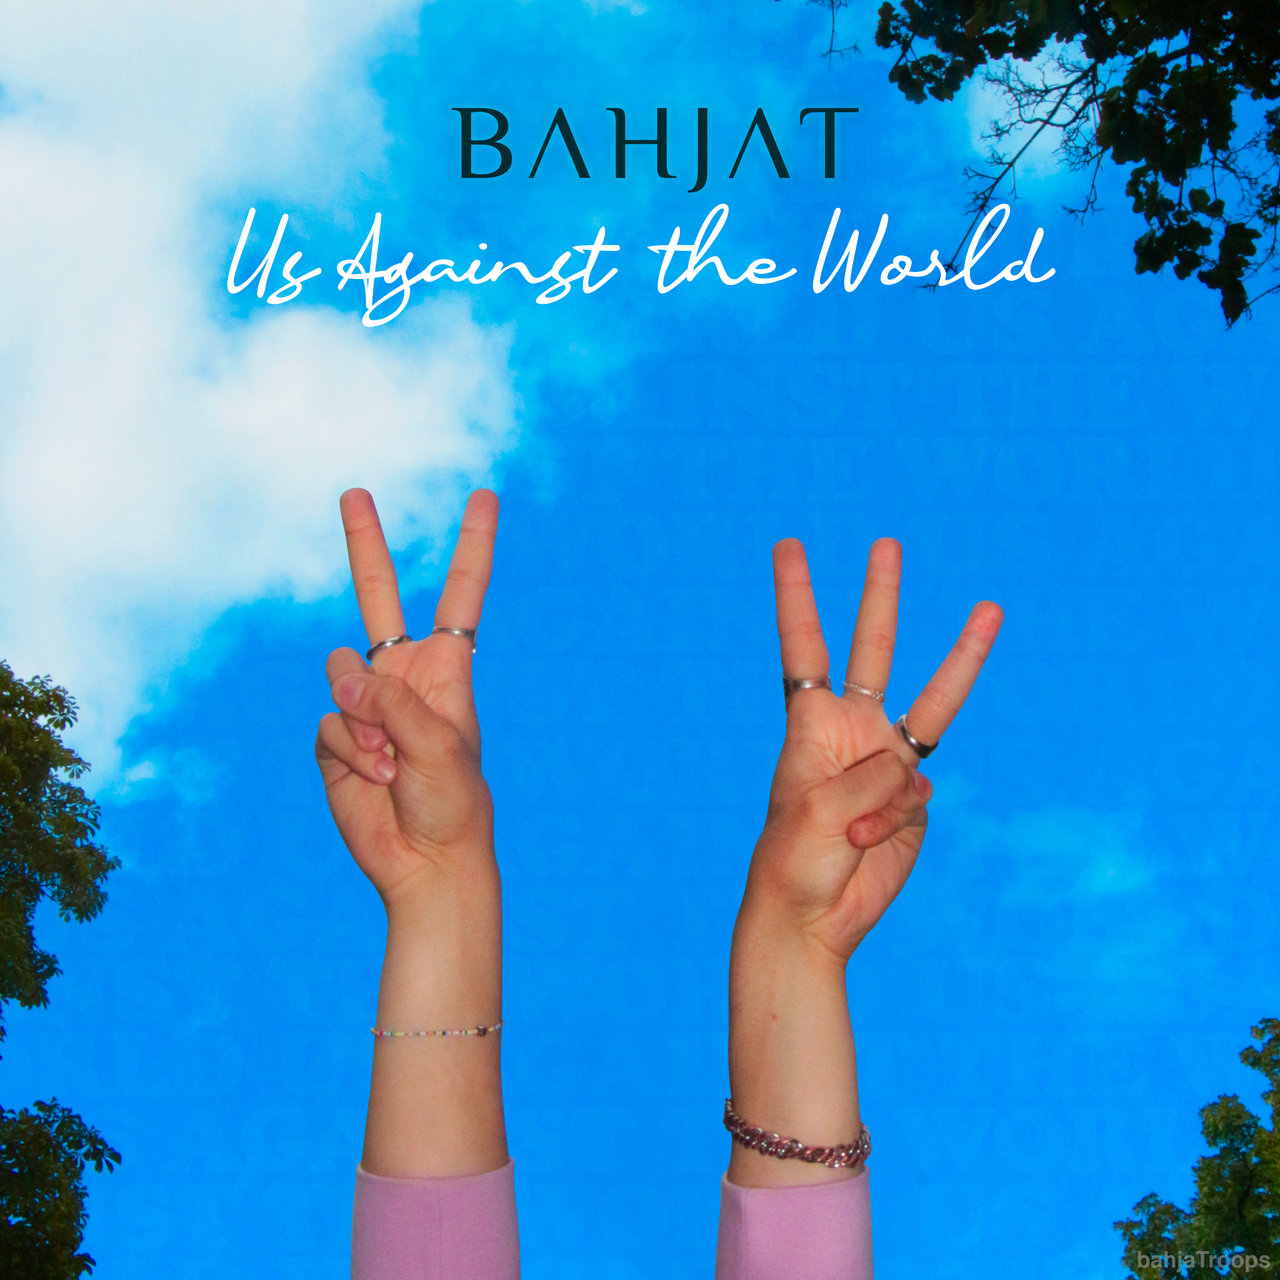 Bahjat Us Against the World cover artwork